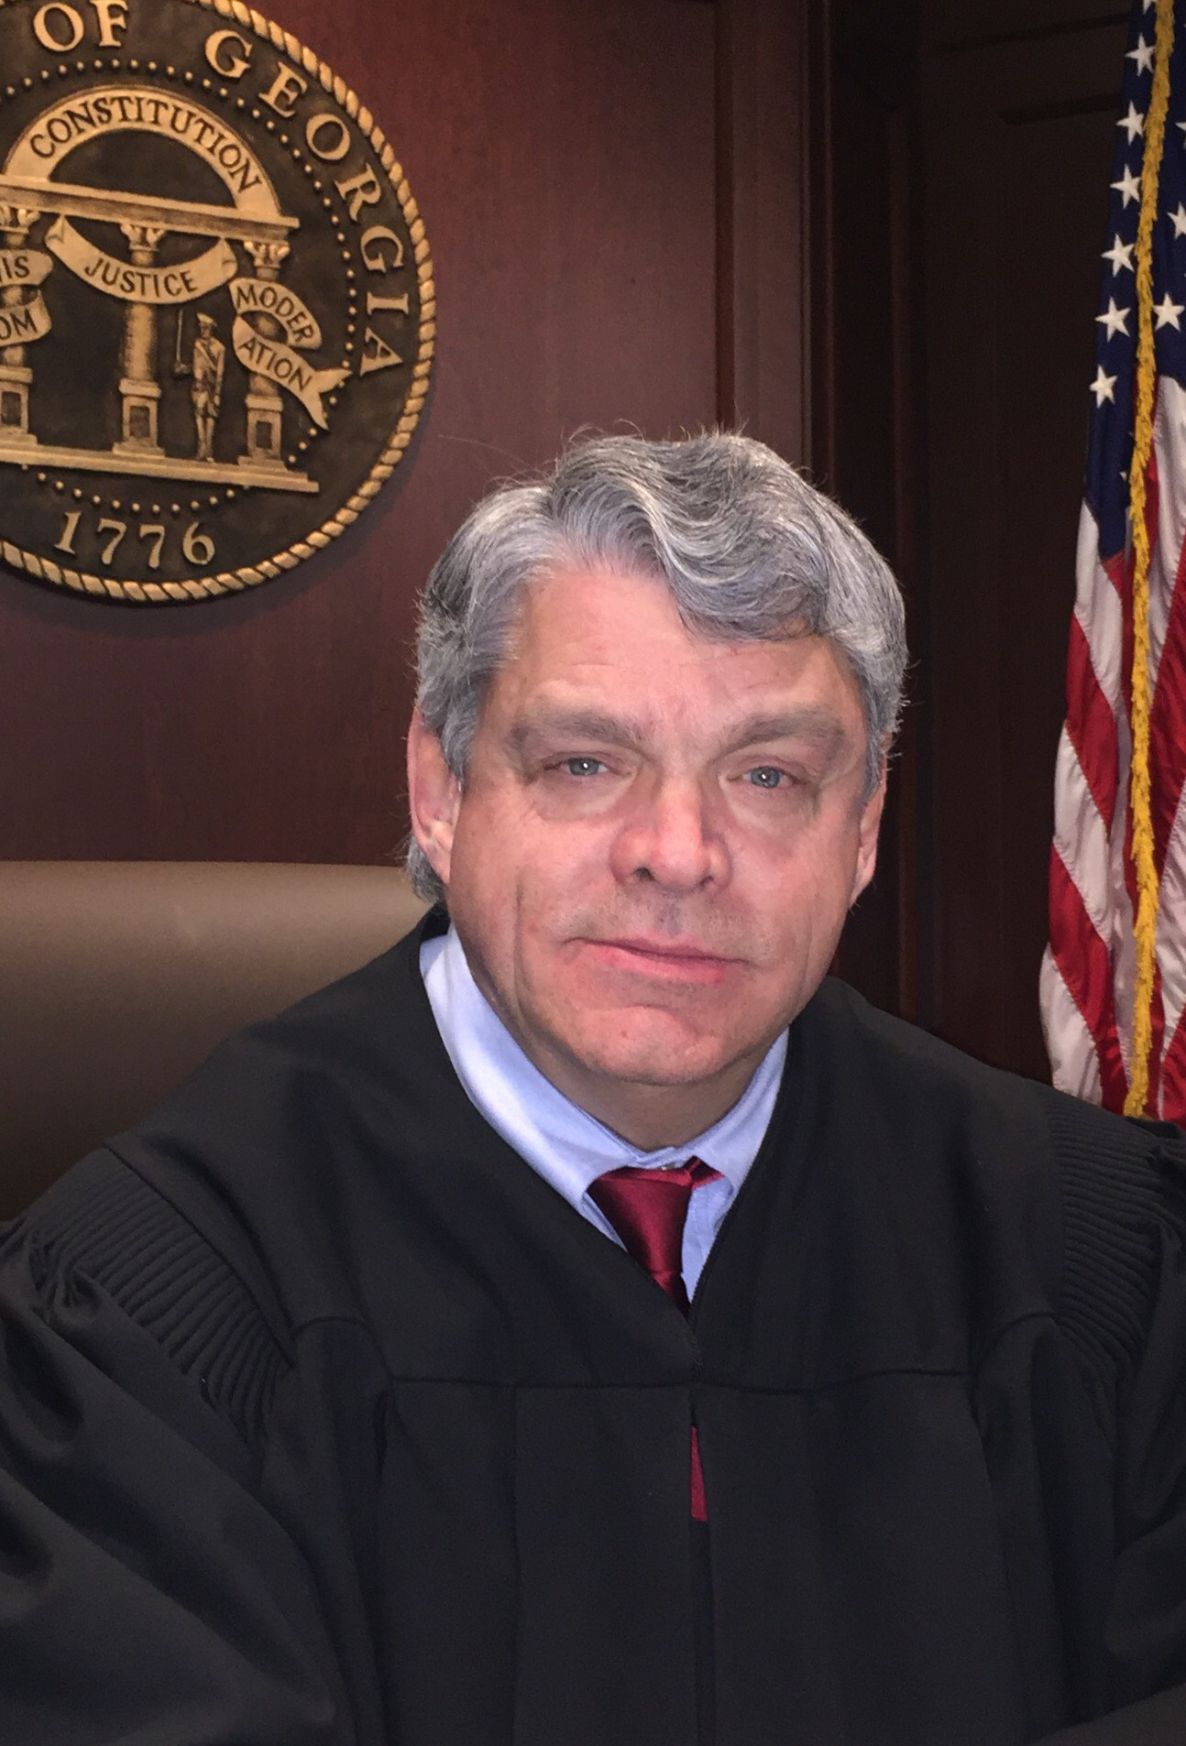 Superior Court Chief Judge announces retirement Local News